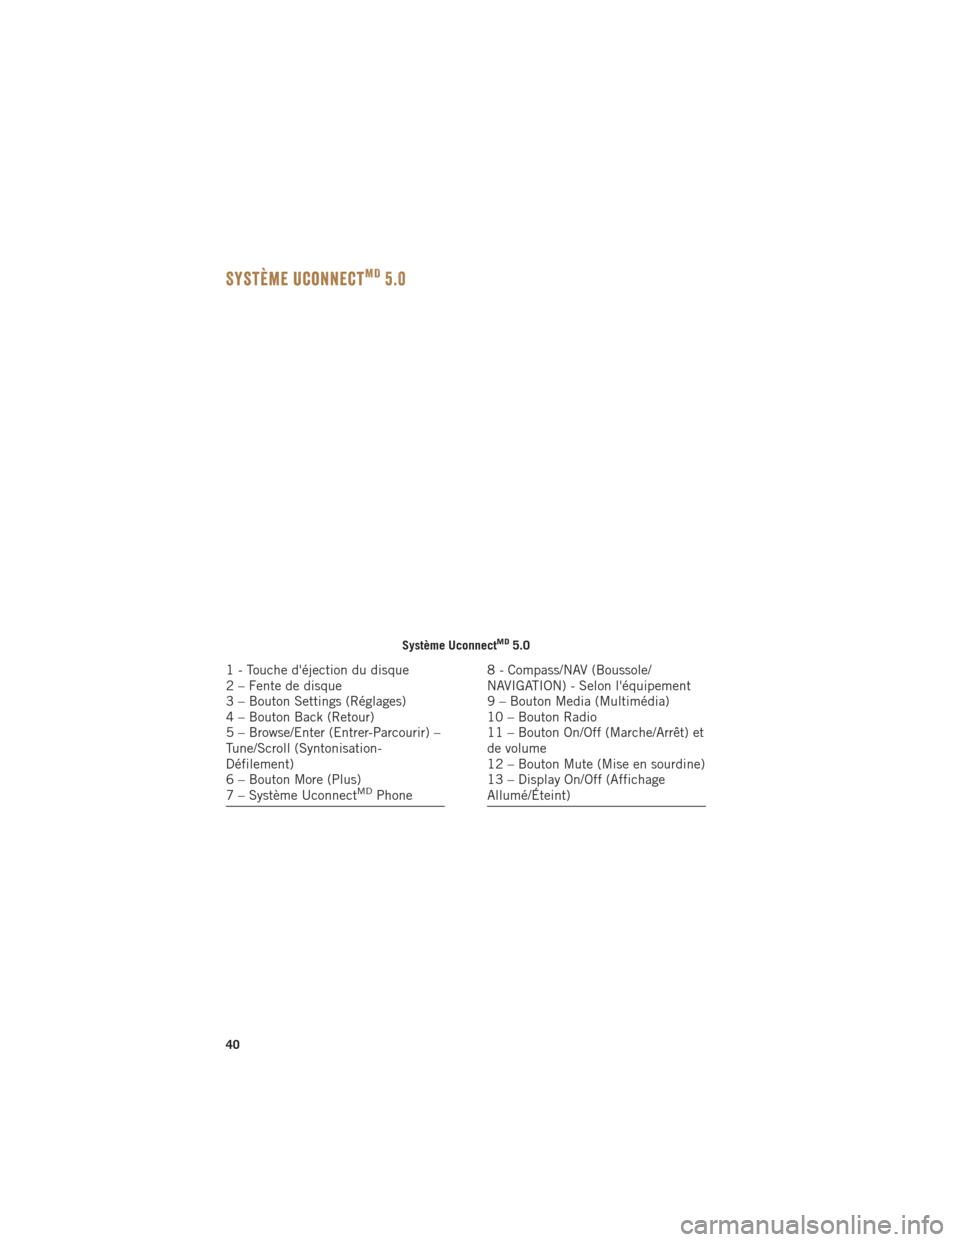 Ram ProMaster 2015  Guide dutilisateur (in French) Système UconnectMD5.0
Système UconnectMD5.0
1 - Touche déjection du disque
2 – Fente de disque
3 – Bouton Settings (Réglages)
4 – Bouton Back (Retour)
5 – Browse/Enter (Entrer-Parcourir) 